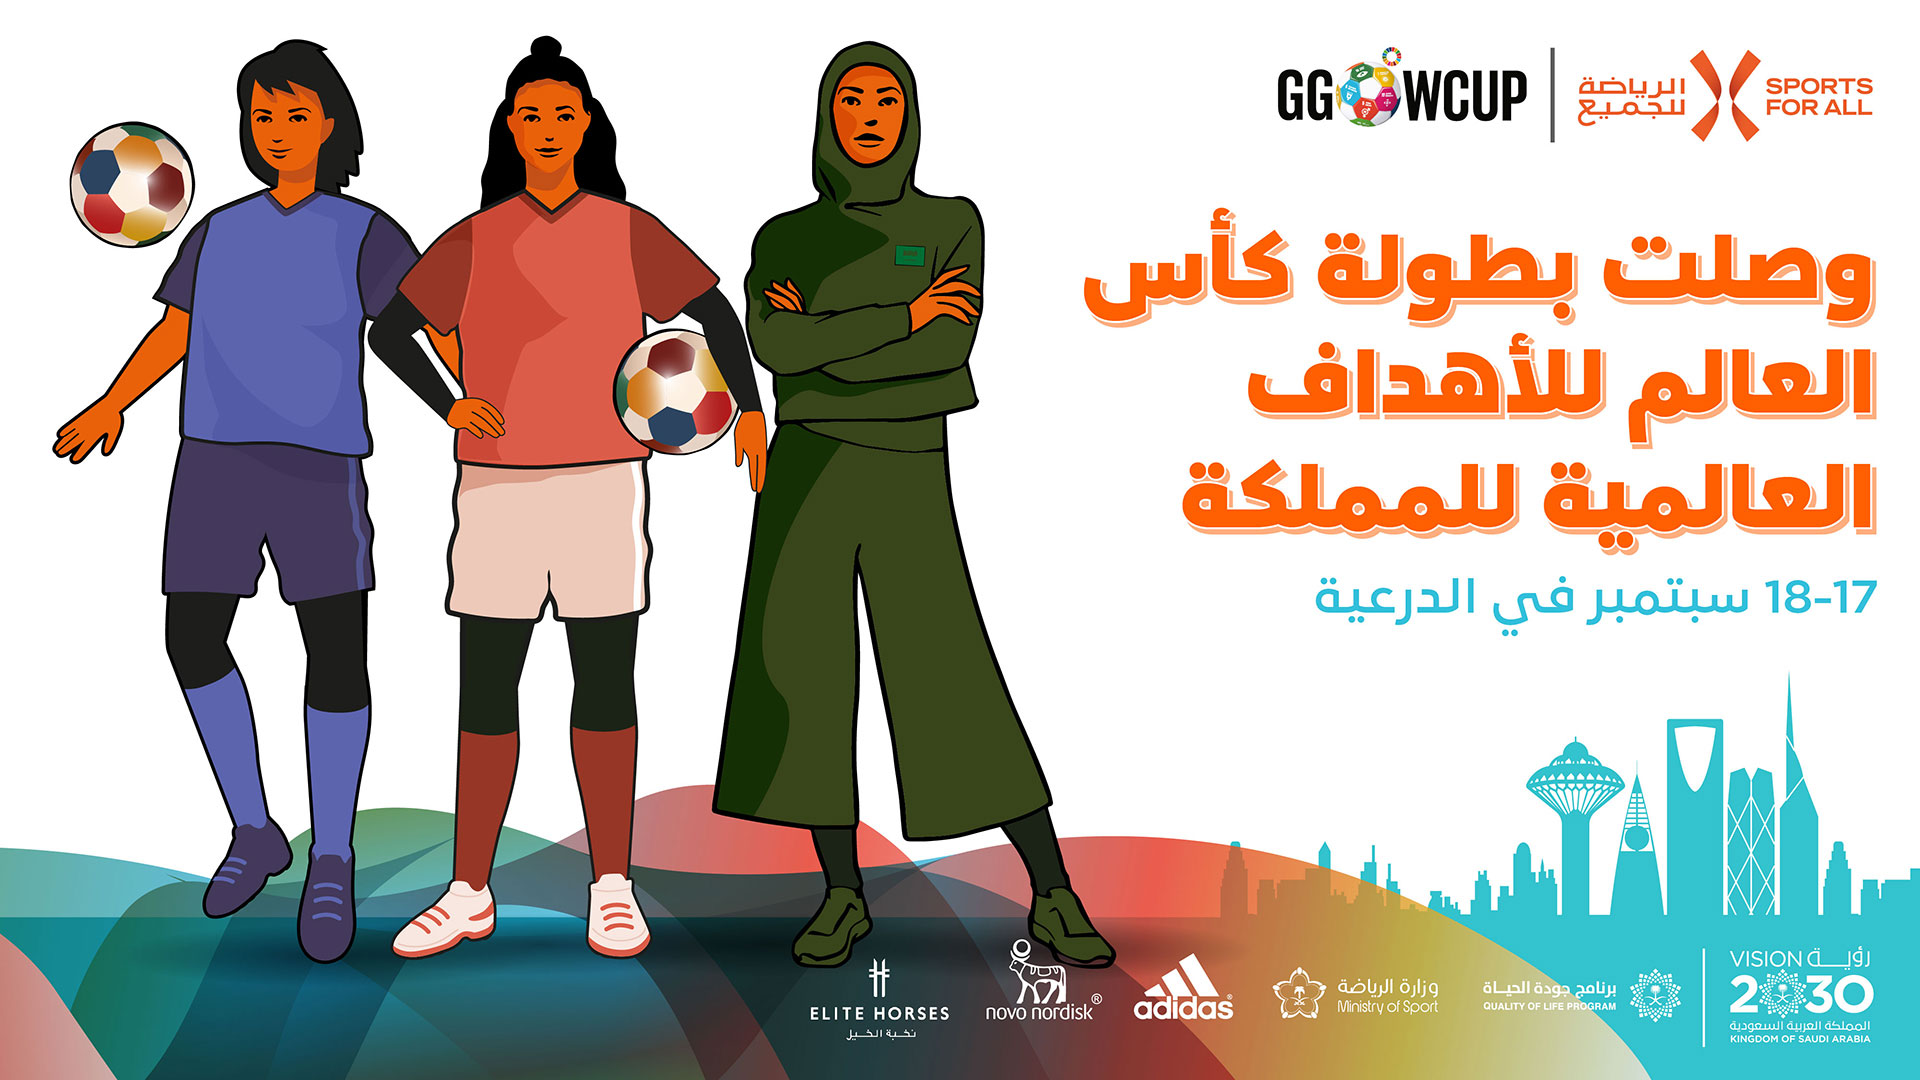 global-goals-world-cup-ksa-event-poster